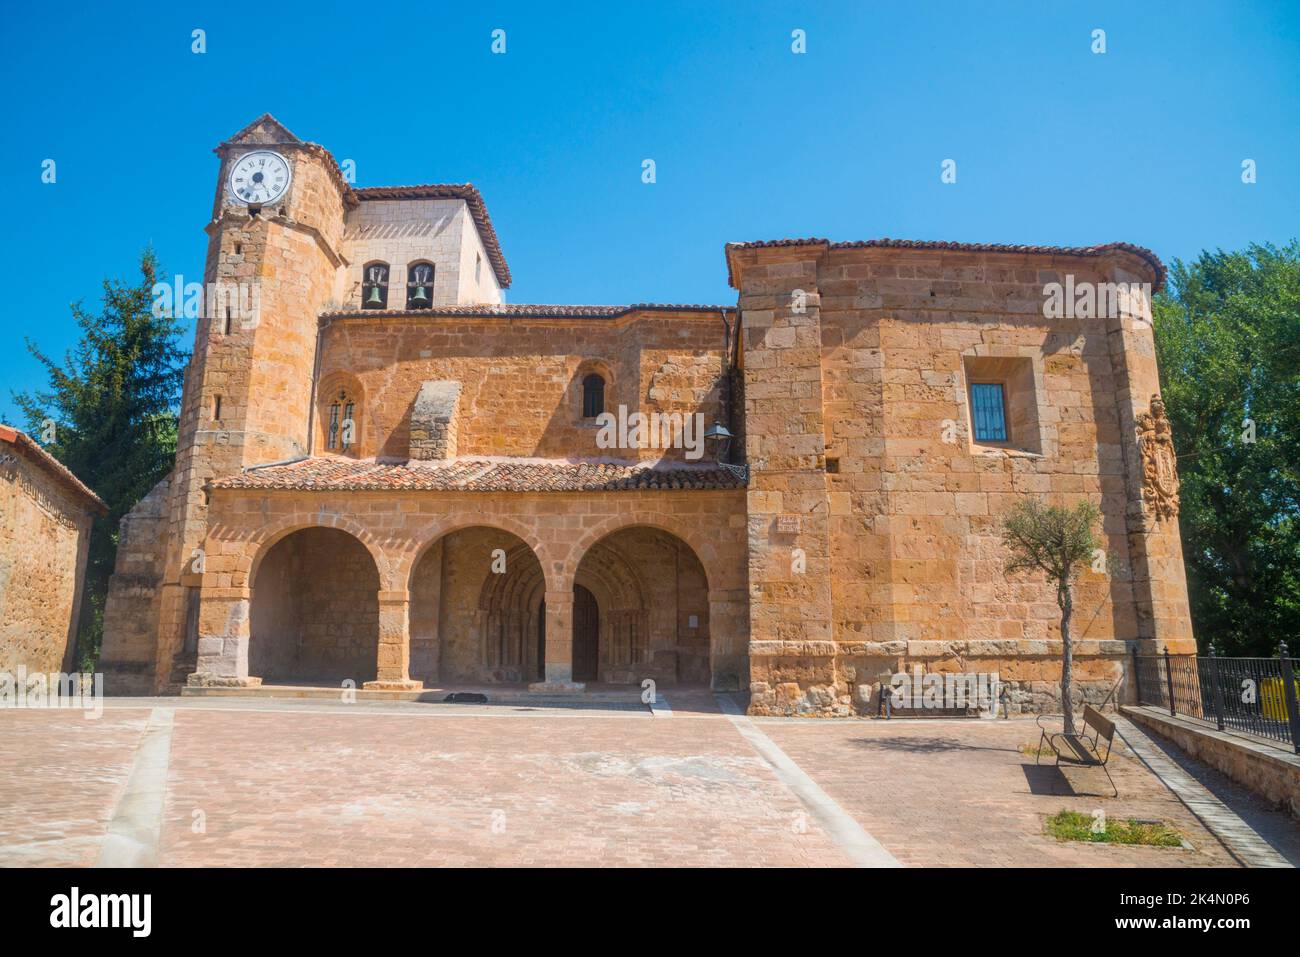 Facade of the church. Lences, Burgos province, Castilla Leon, Spain. Stock Photo